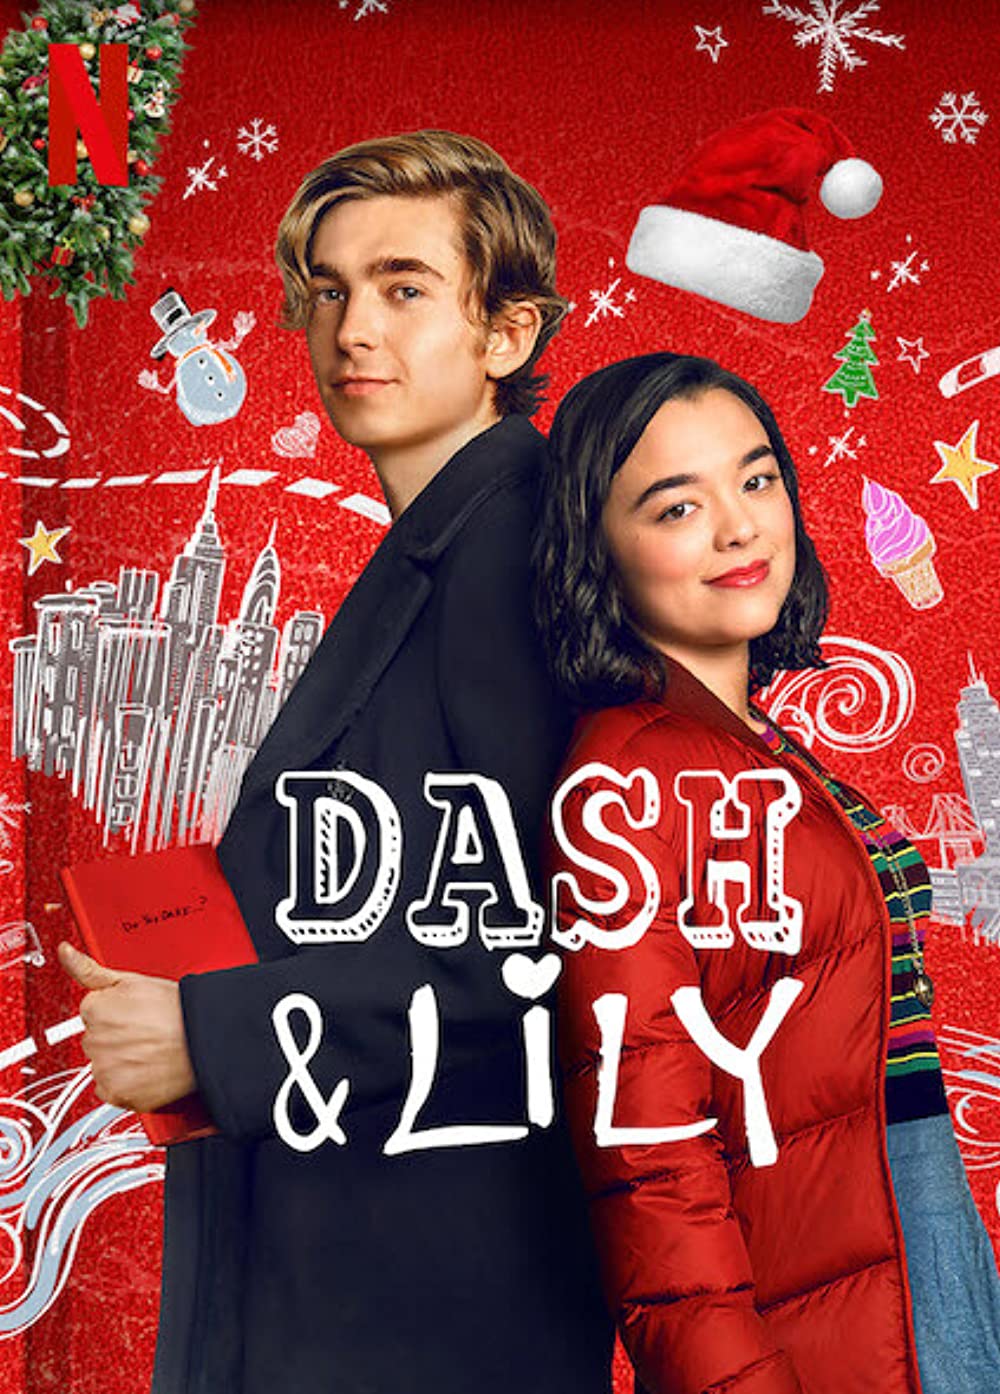 Filmbeschreibung zu Dash & Lily